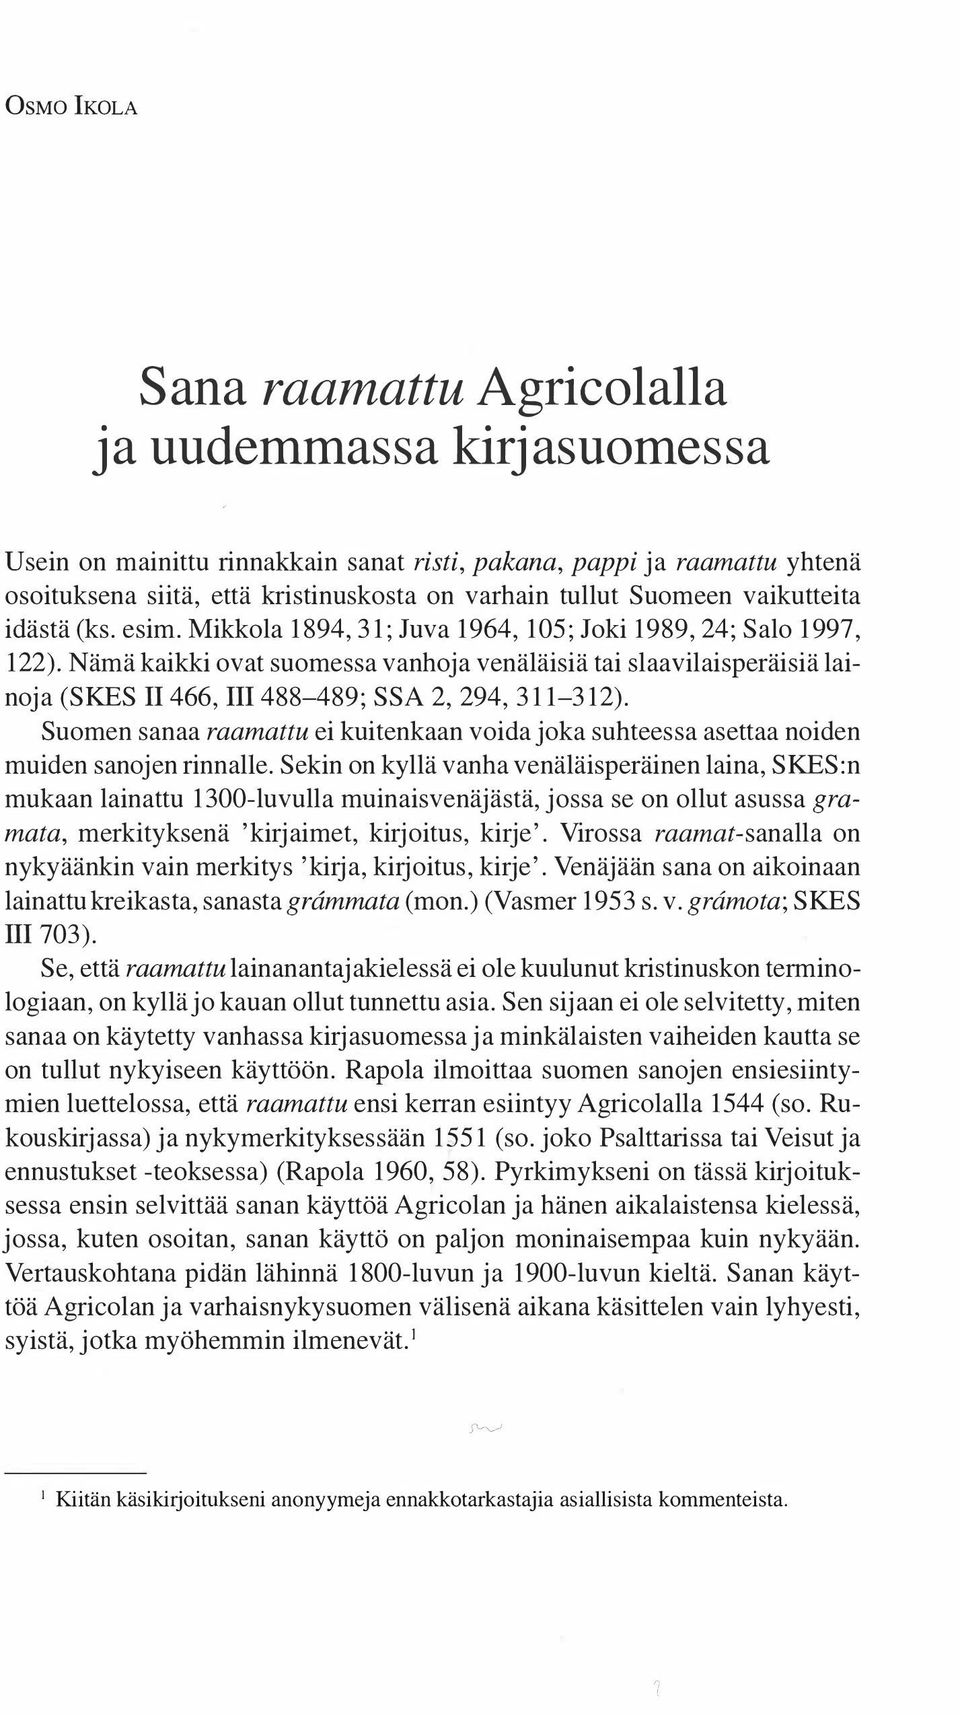 Nämä kaikki ovat suomessa vanhoja venäläisiä tai slaavilaisperäisiä lainoja (SKES II 466, III 488-489; SSA 2, 294, 311-312).